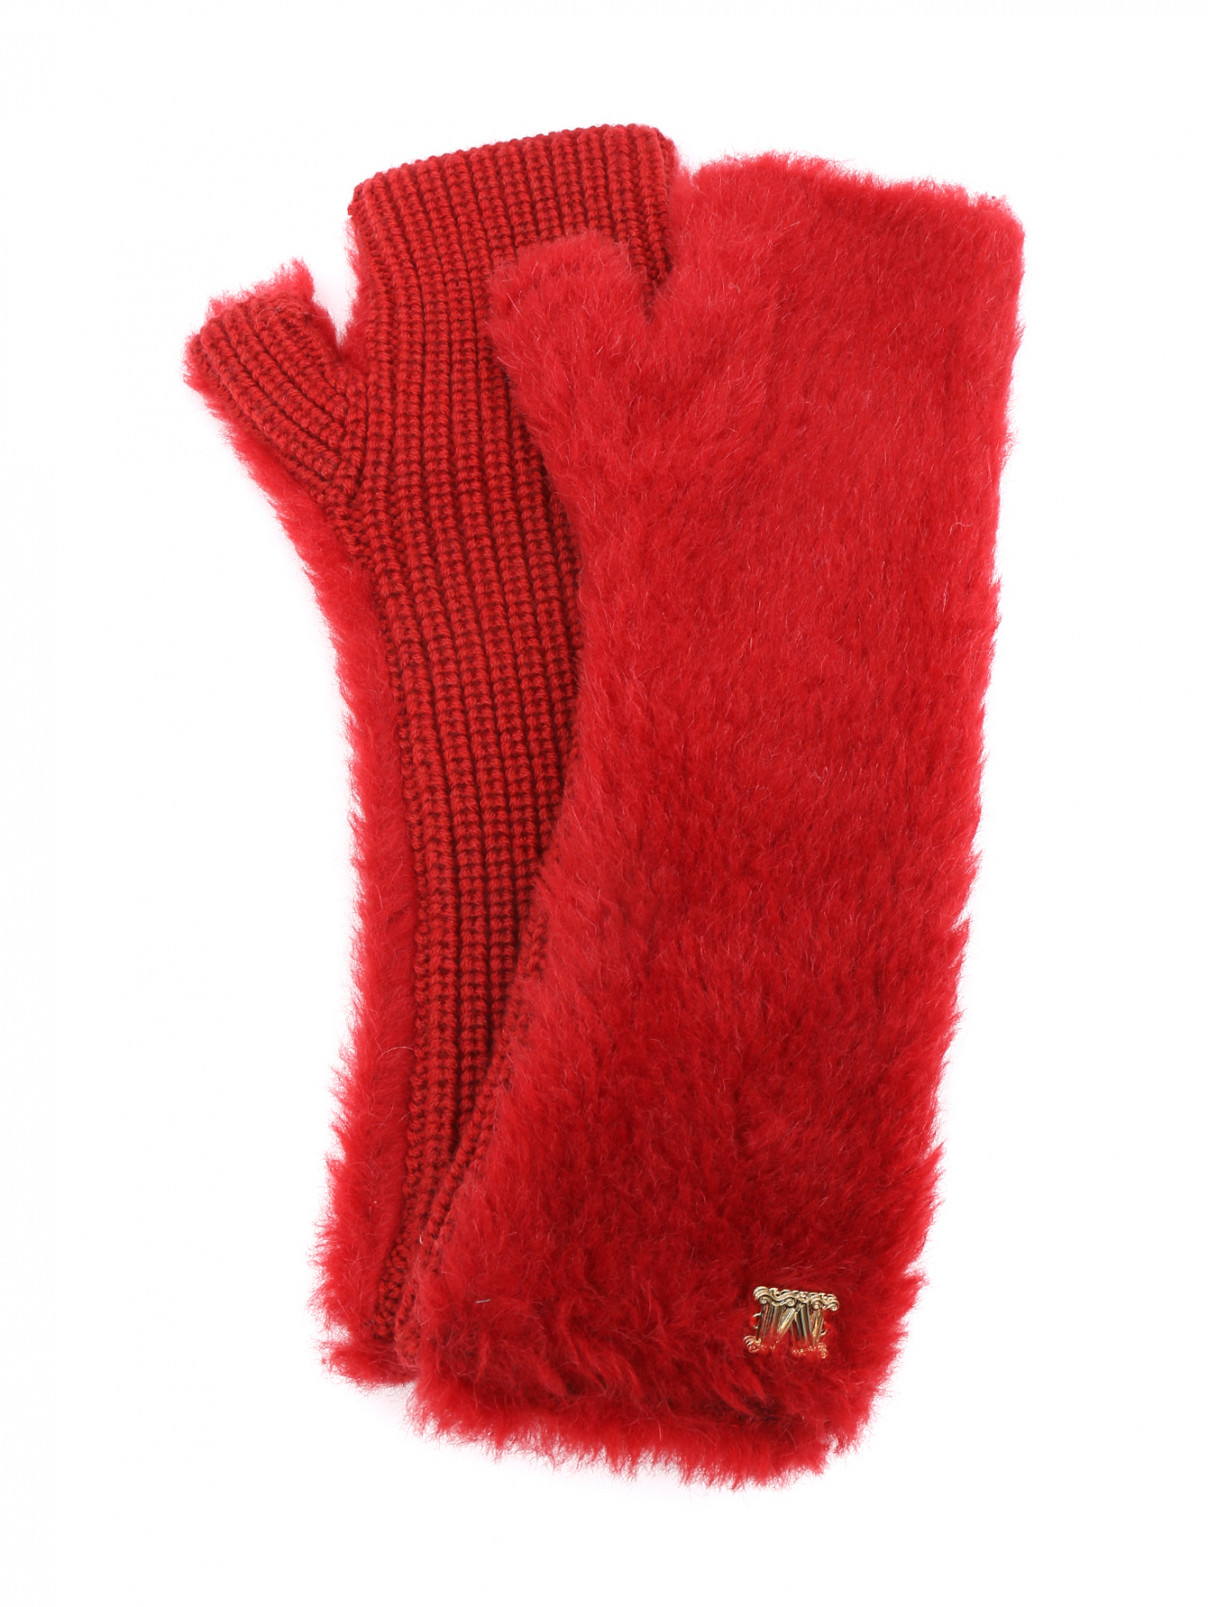 Митенки из шерсти с логотипом Max Mara  –  Общий вид  – Цвет:  Красный